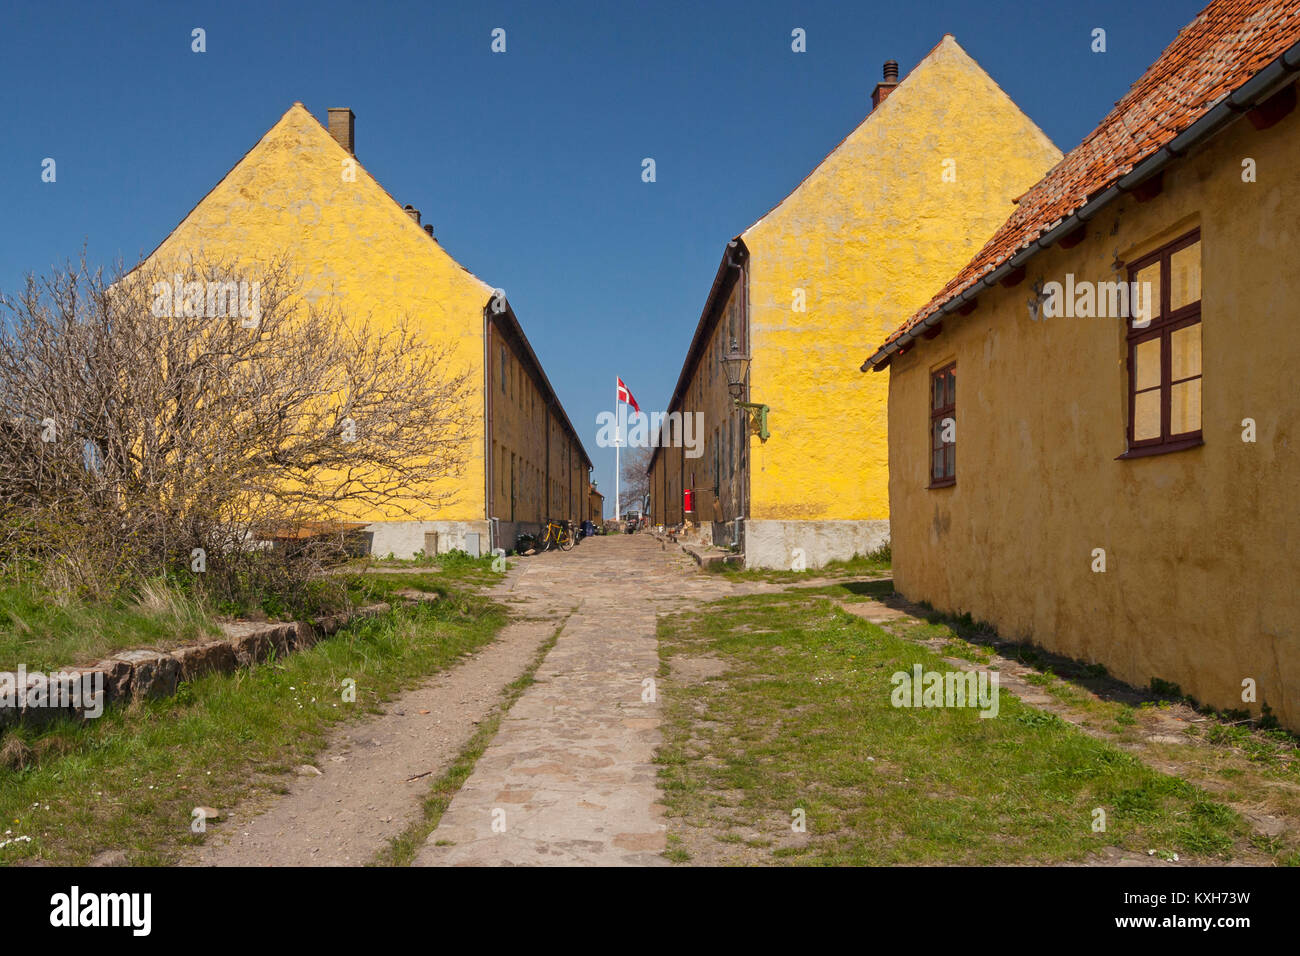 Yellow residential buildings and The Street (Gaden) on Christiansø, Ertholmene, Bornholm, Denmark Stock Photo